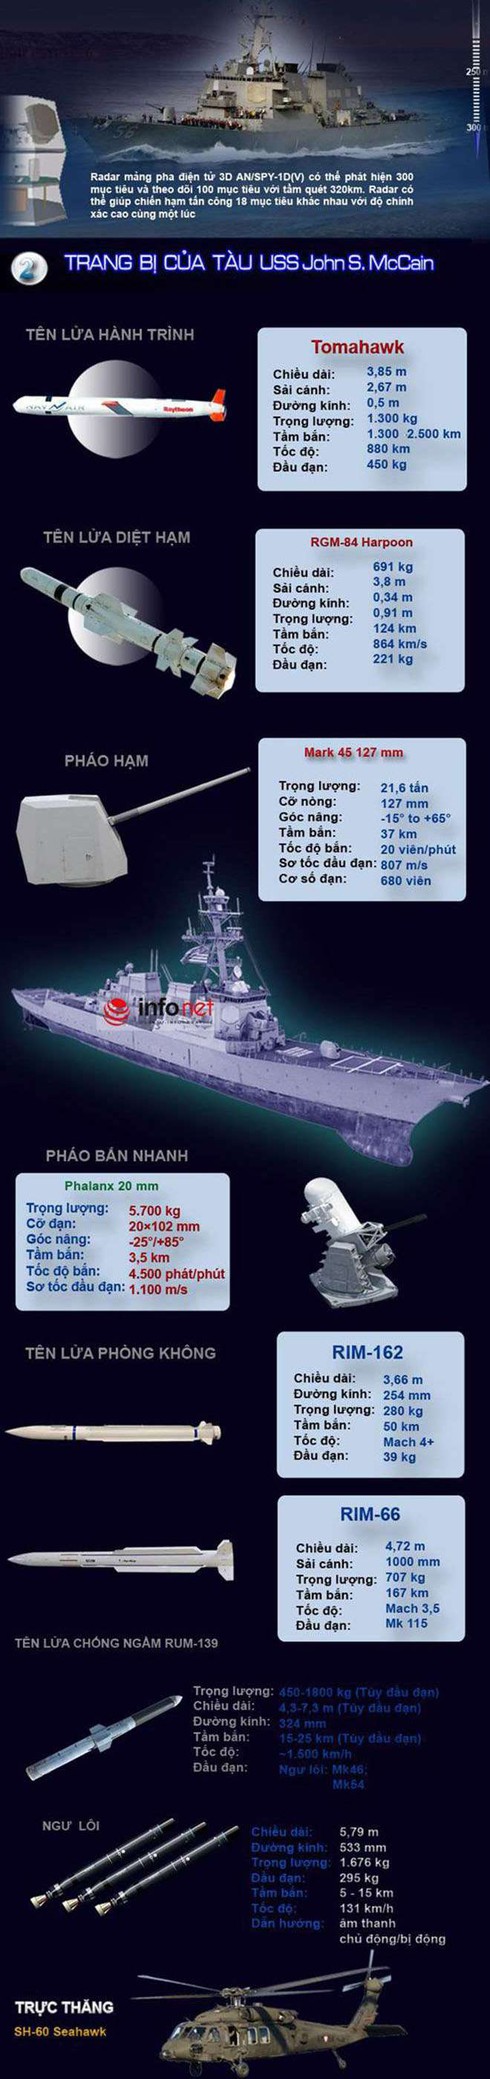 Khám phá sức mạnh khu trục hạm USS John S. McCain đang thăm Đà Nẵng - ảnh 4